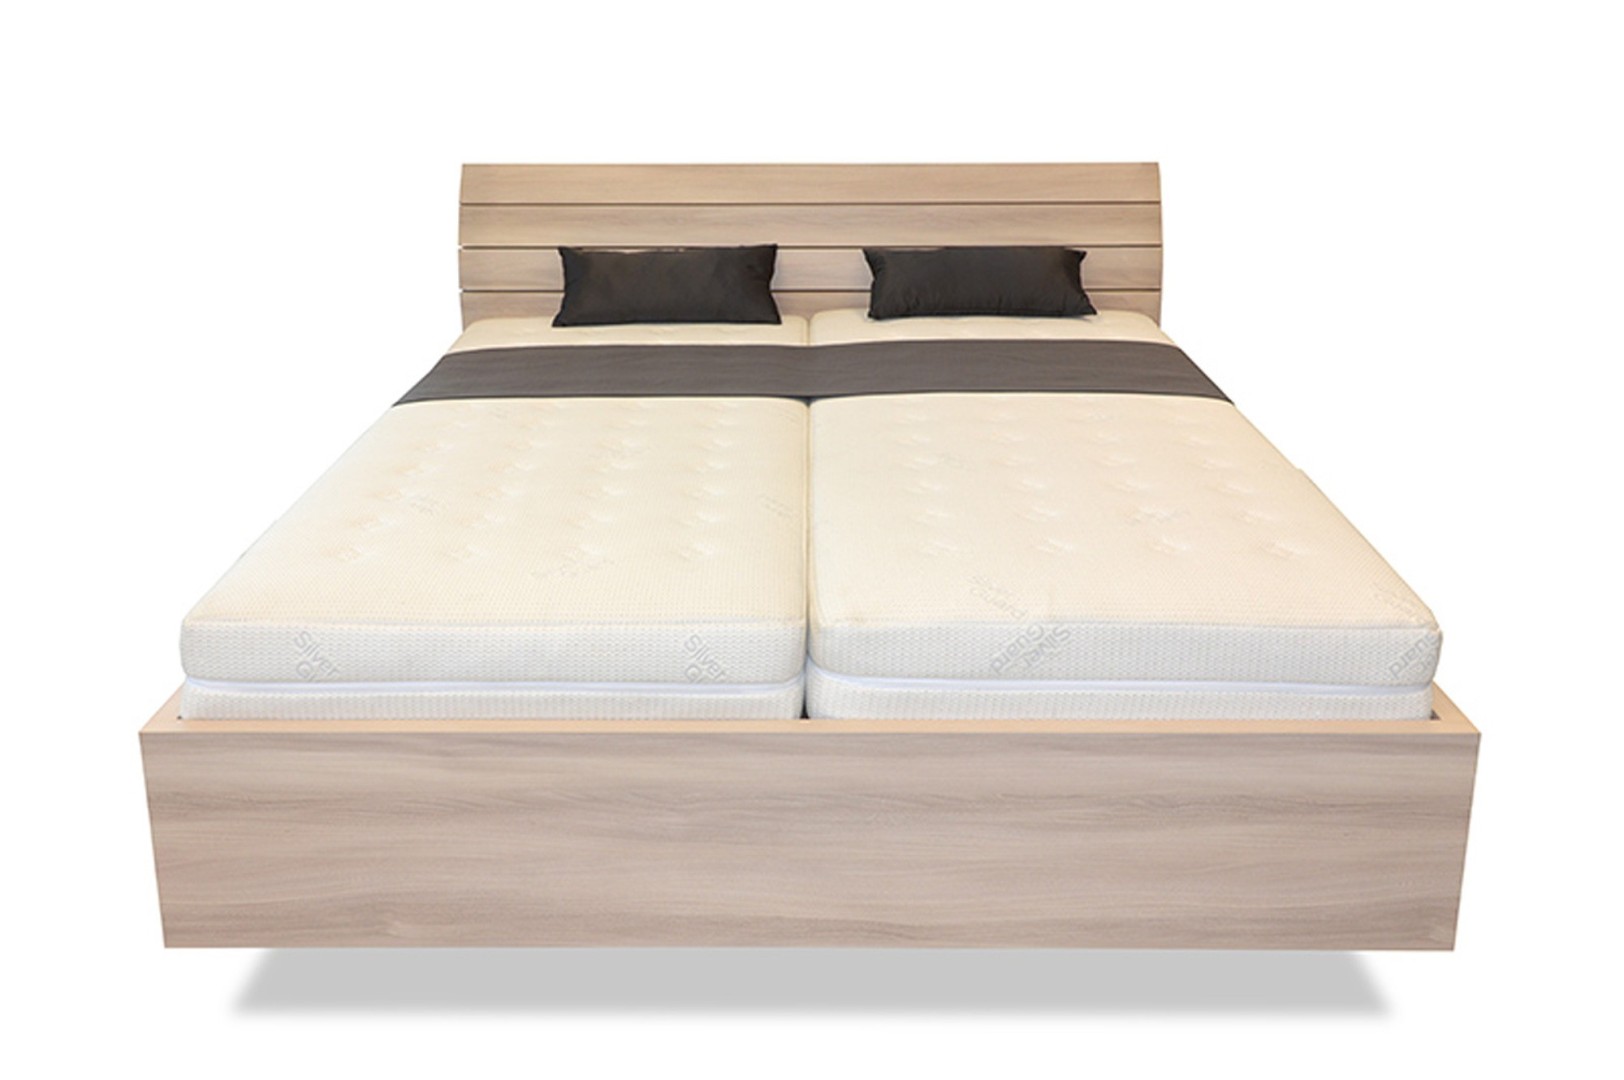 Ahorn SALINA Basic - vznášející se dvoulůžková postel 180 x 200 cm, lamino